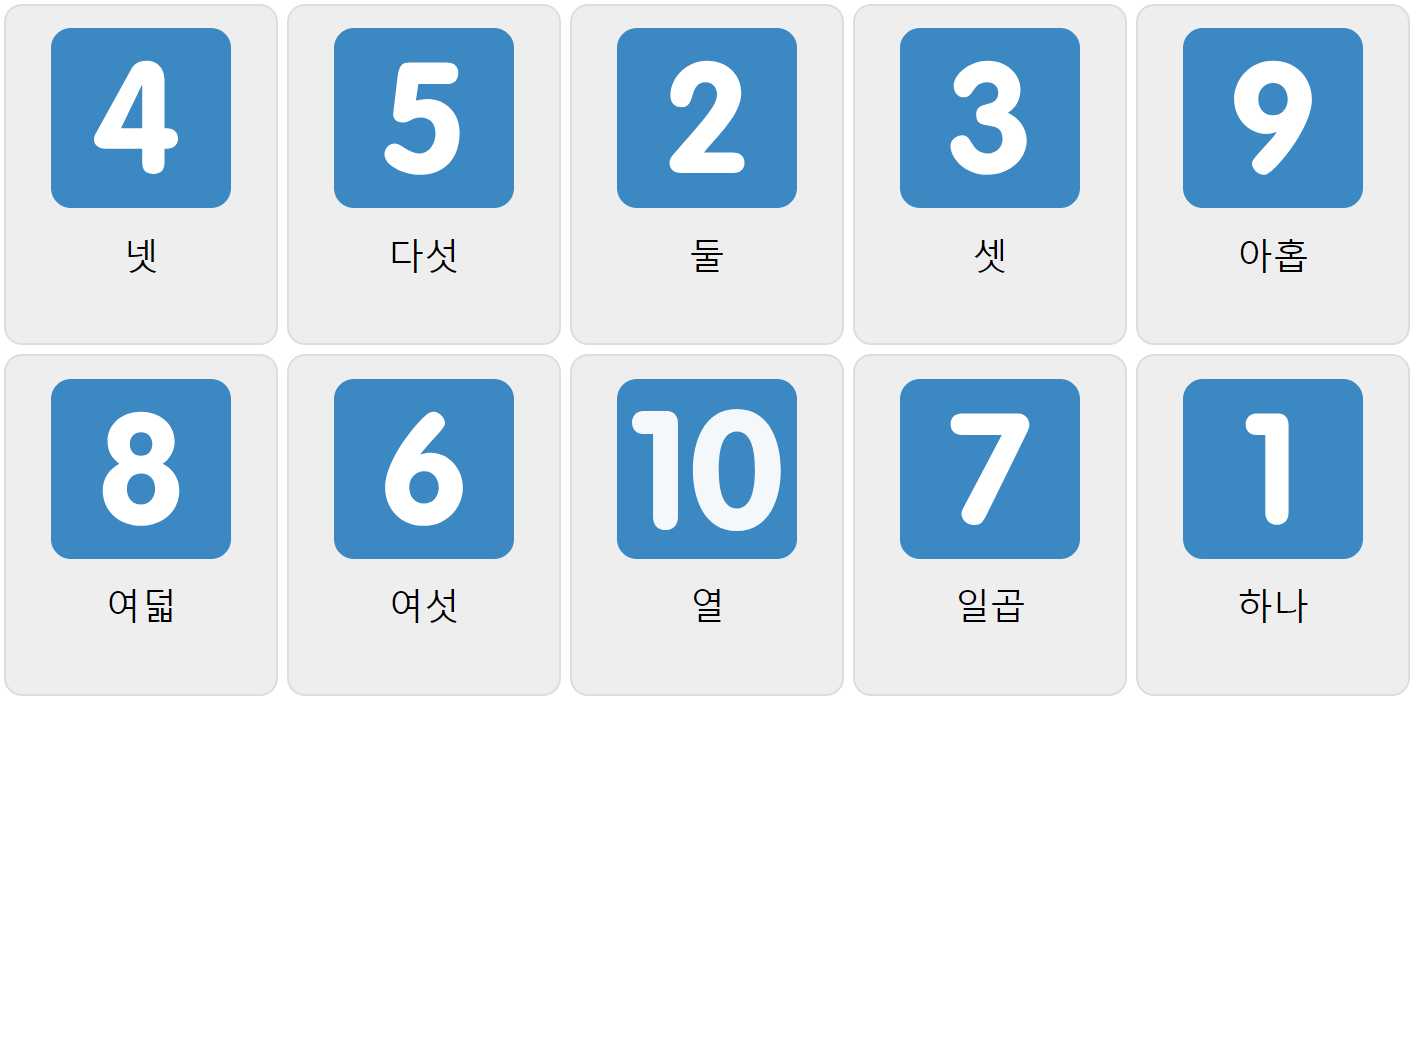 Numbers 1-10 in Korean